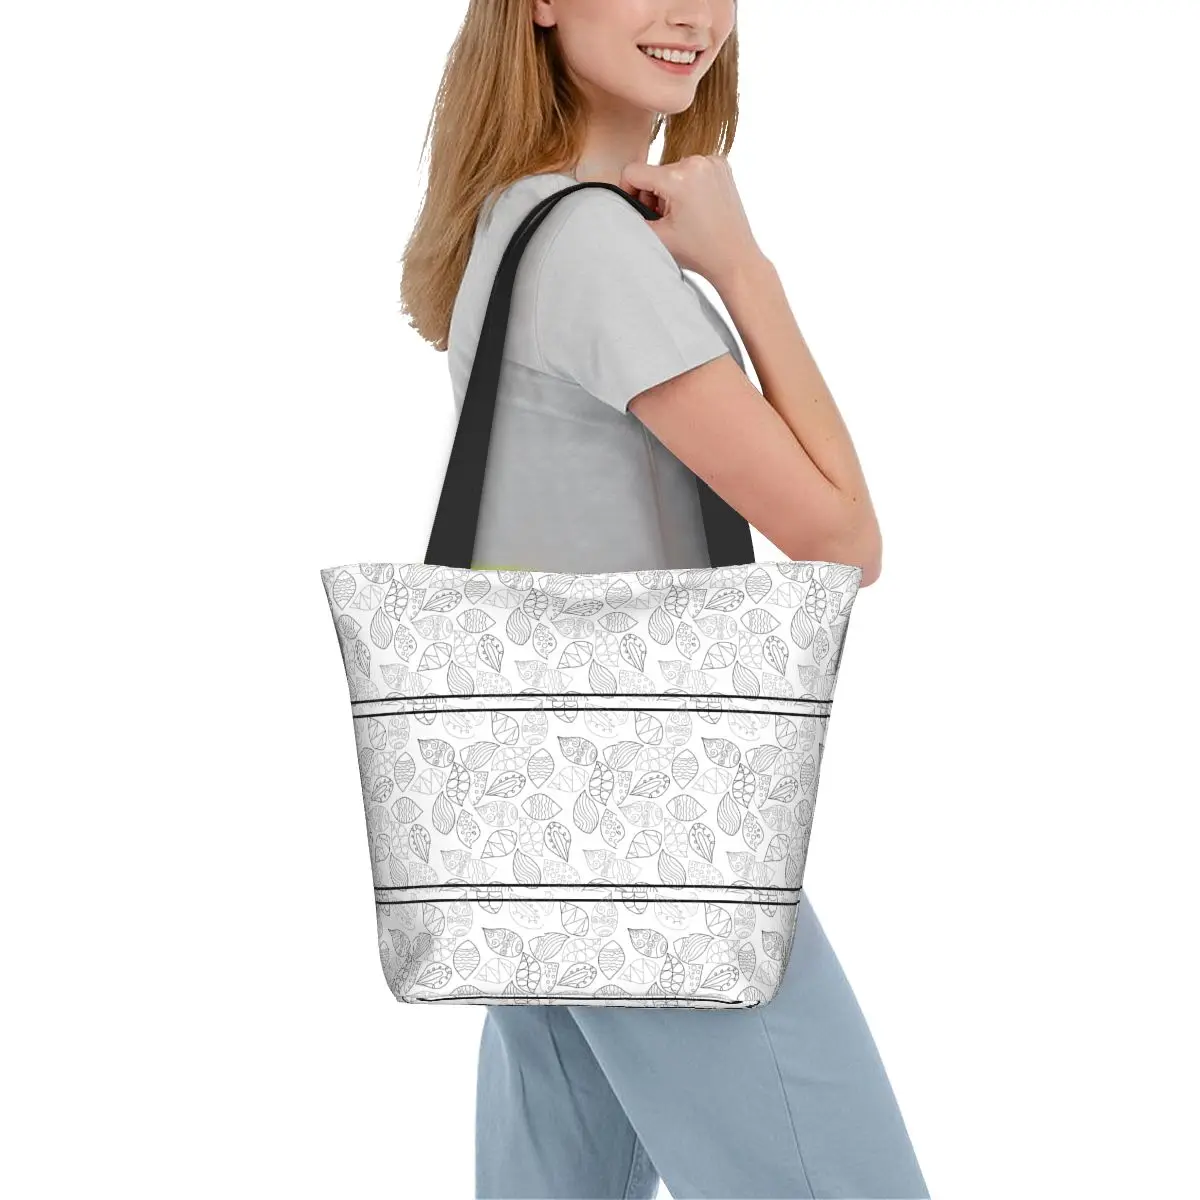 

Сумка-шоппер с принтом листьев и графическим рисунком, модная дамская сумочка-тоут из полиэстера, школьные женские сумки